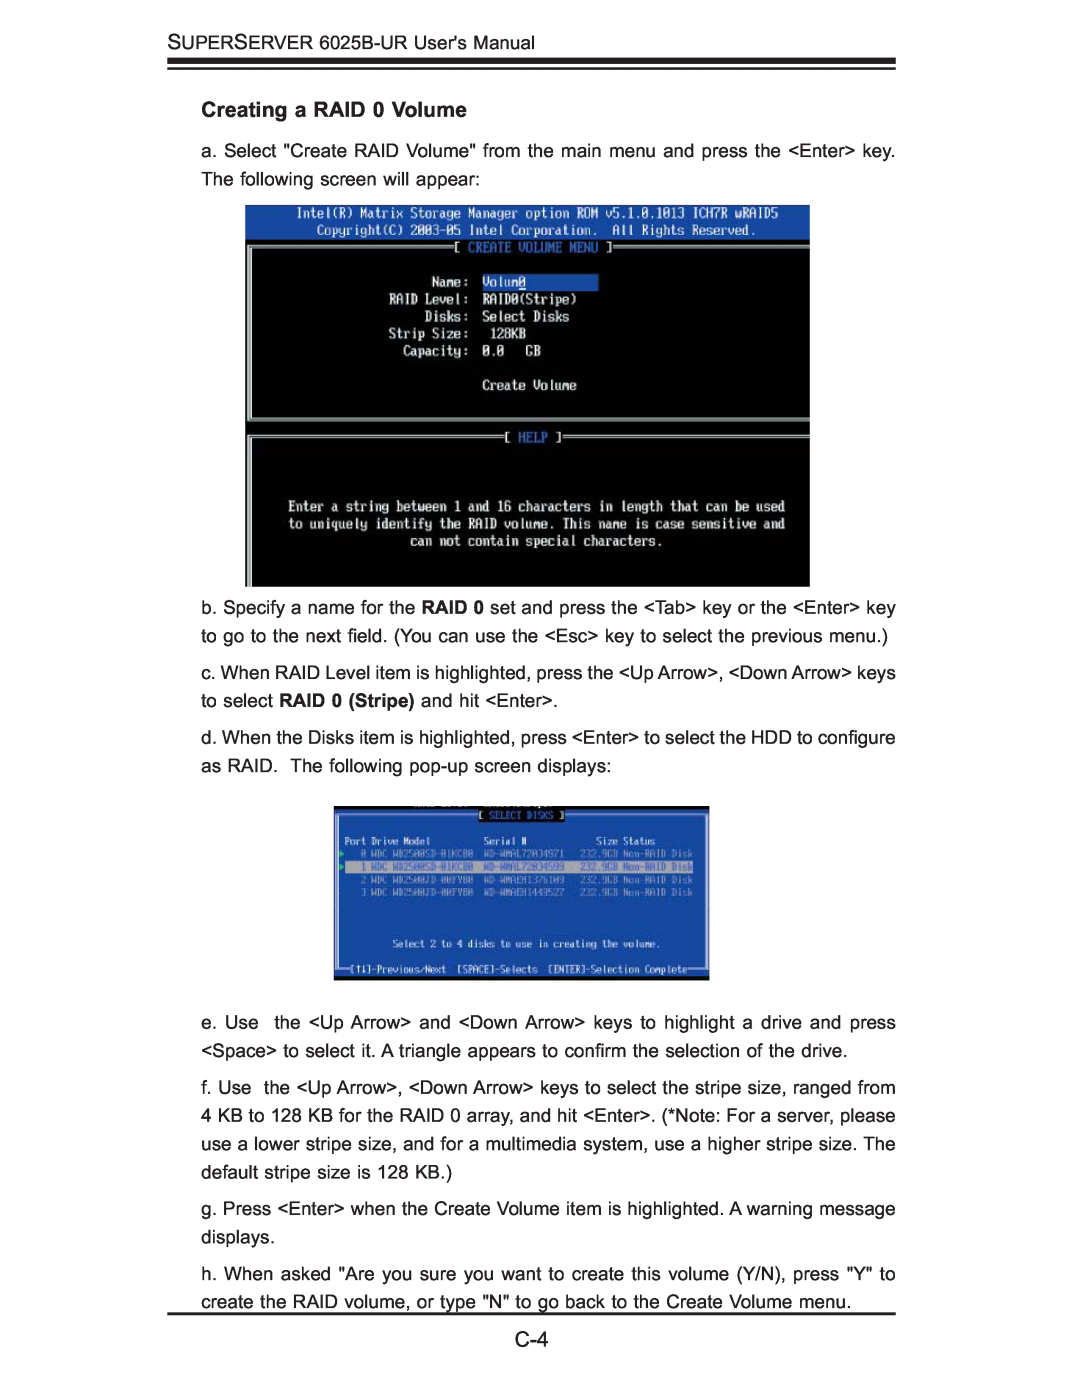 SUPER MICRO Computer 6025B-UR user manual Creating a RAID 0 Volume 